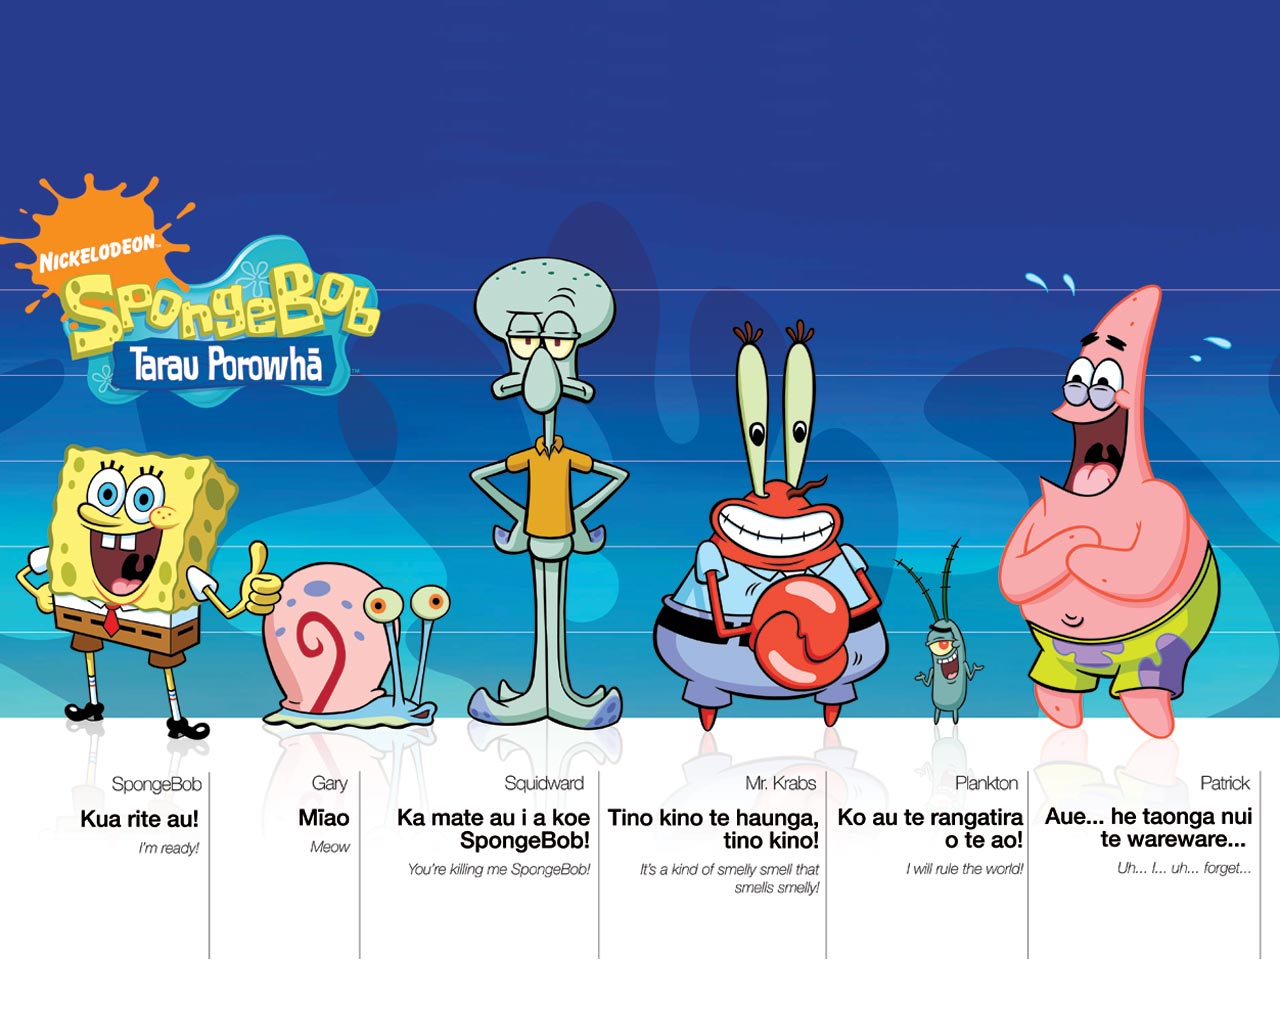 Patrick Spongebob Squarepants Characters